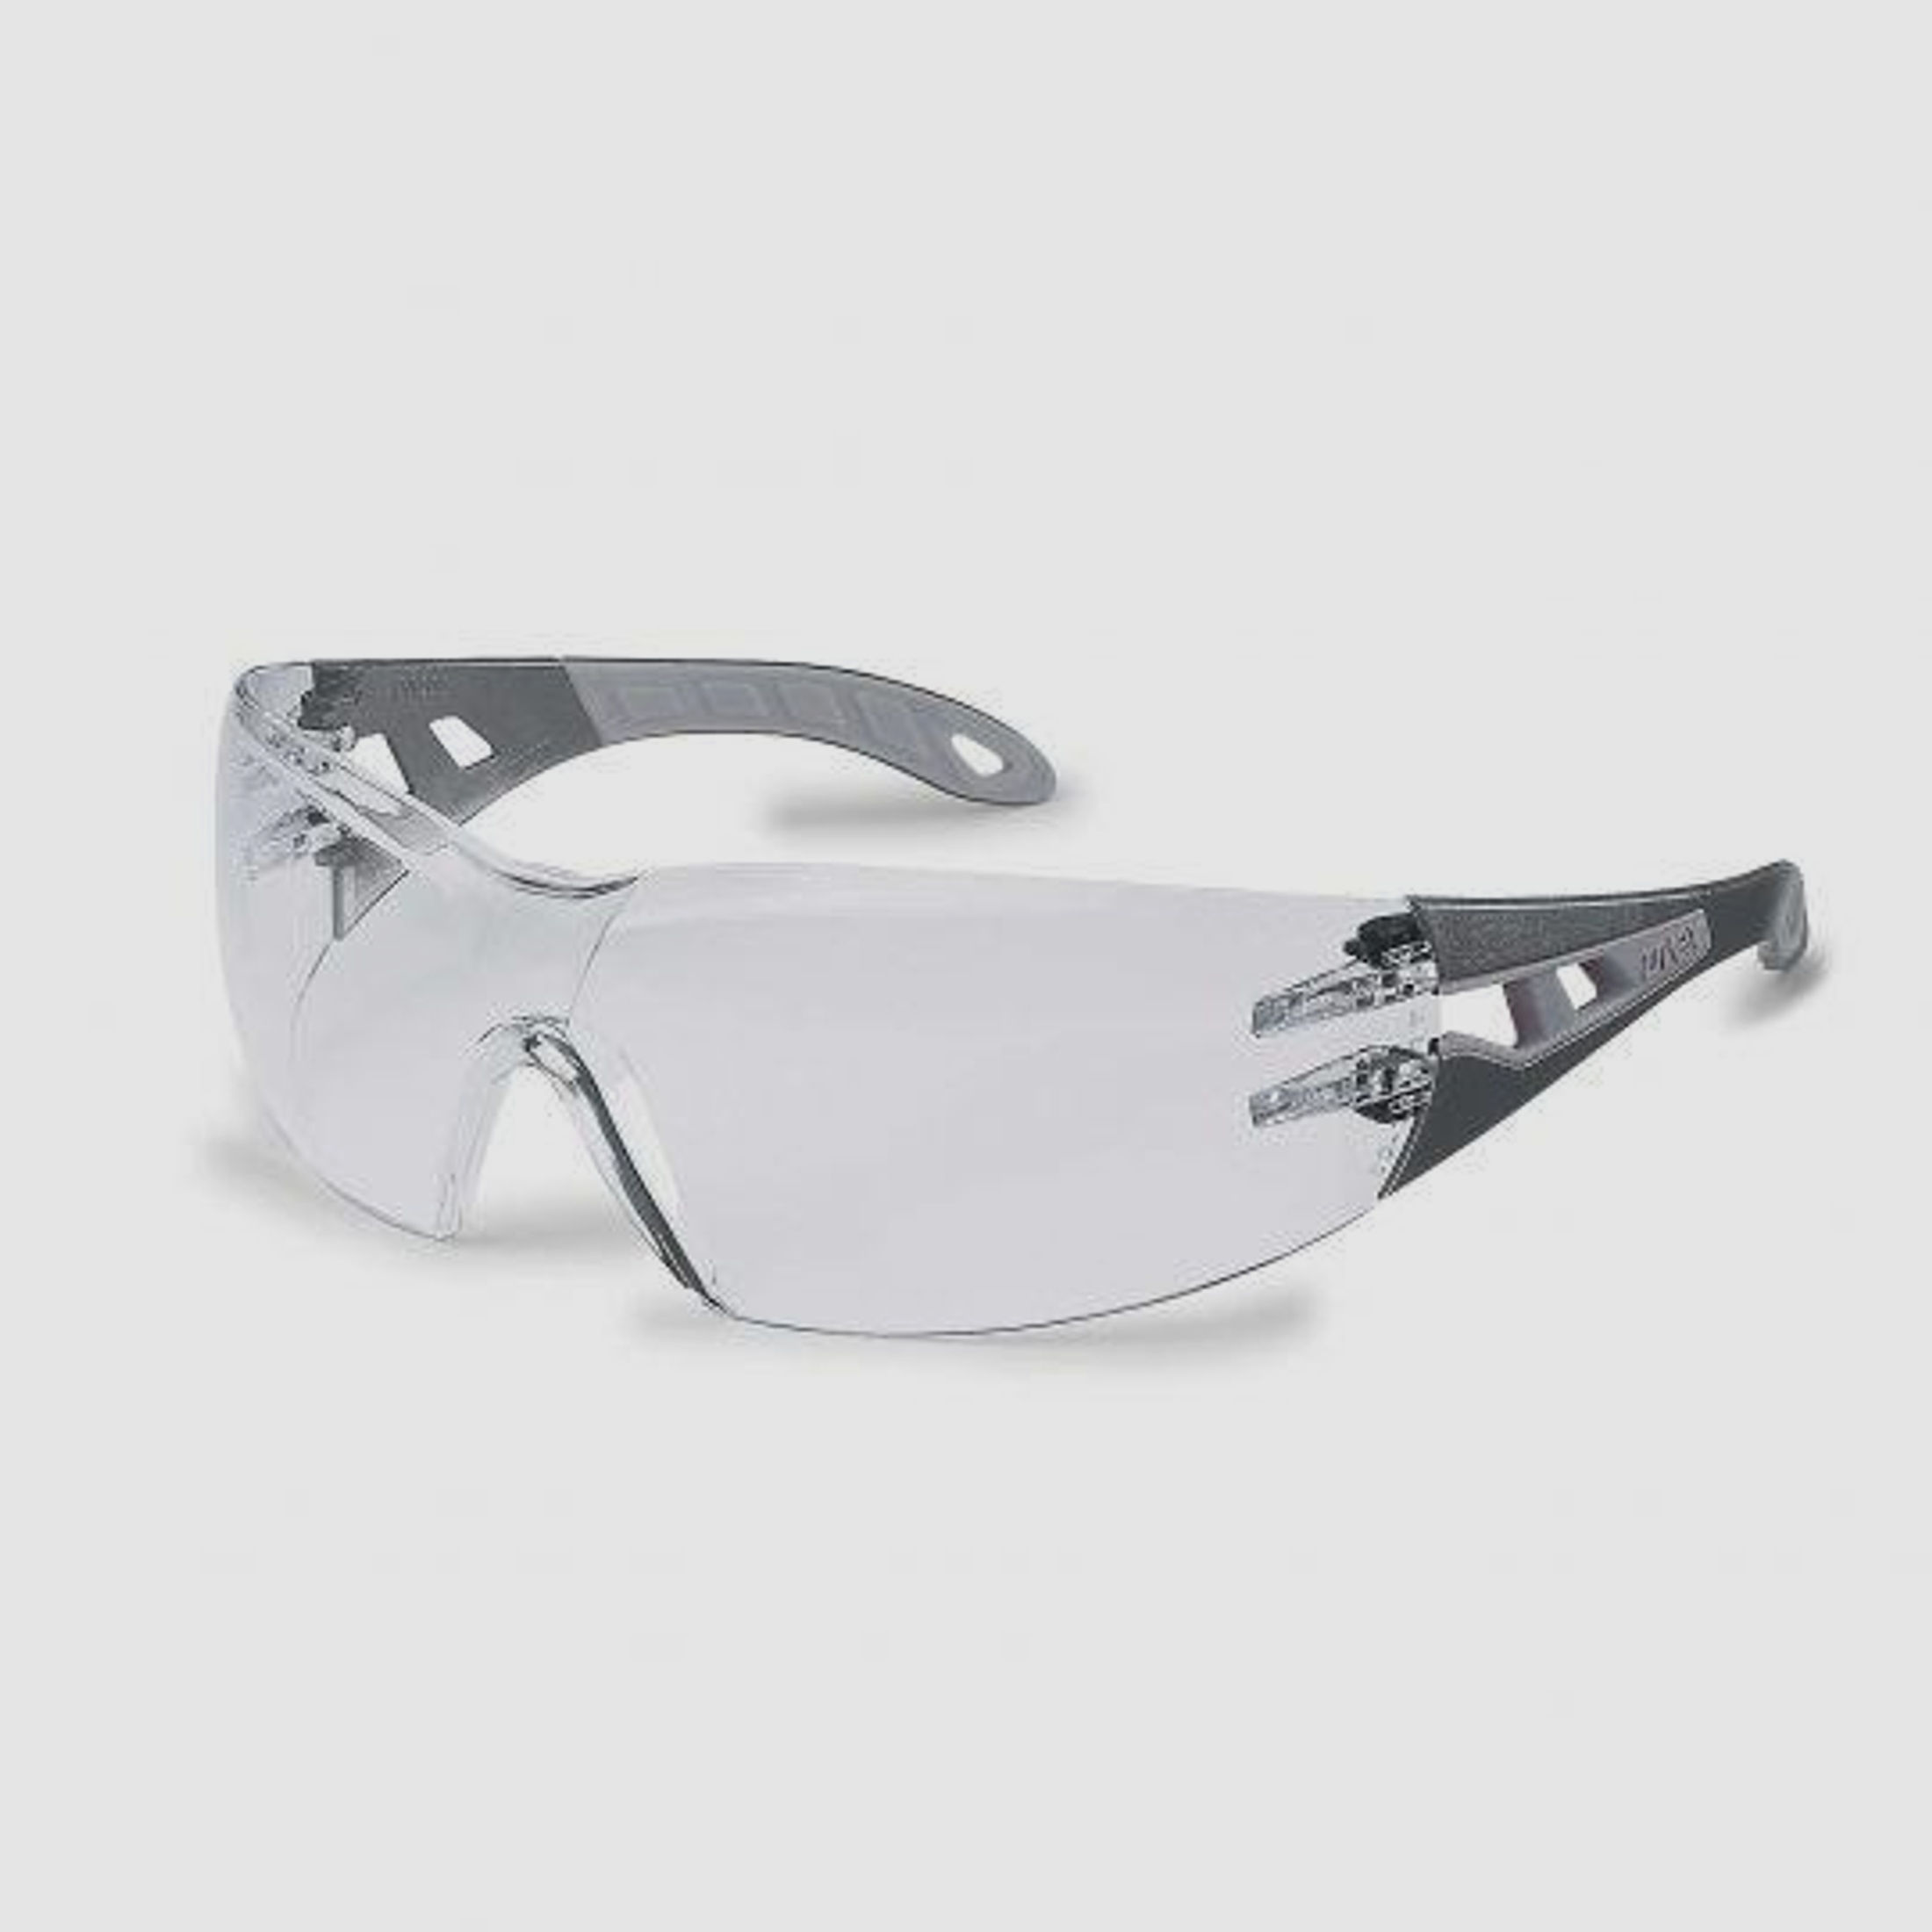 UVEX Schutzbrille Pheos s schwarz/grau Scheibe: farblos